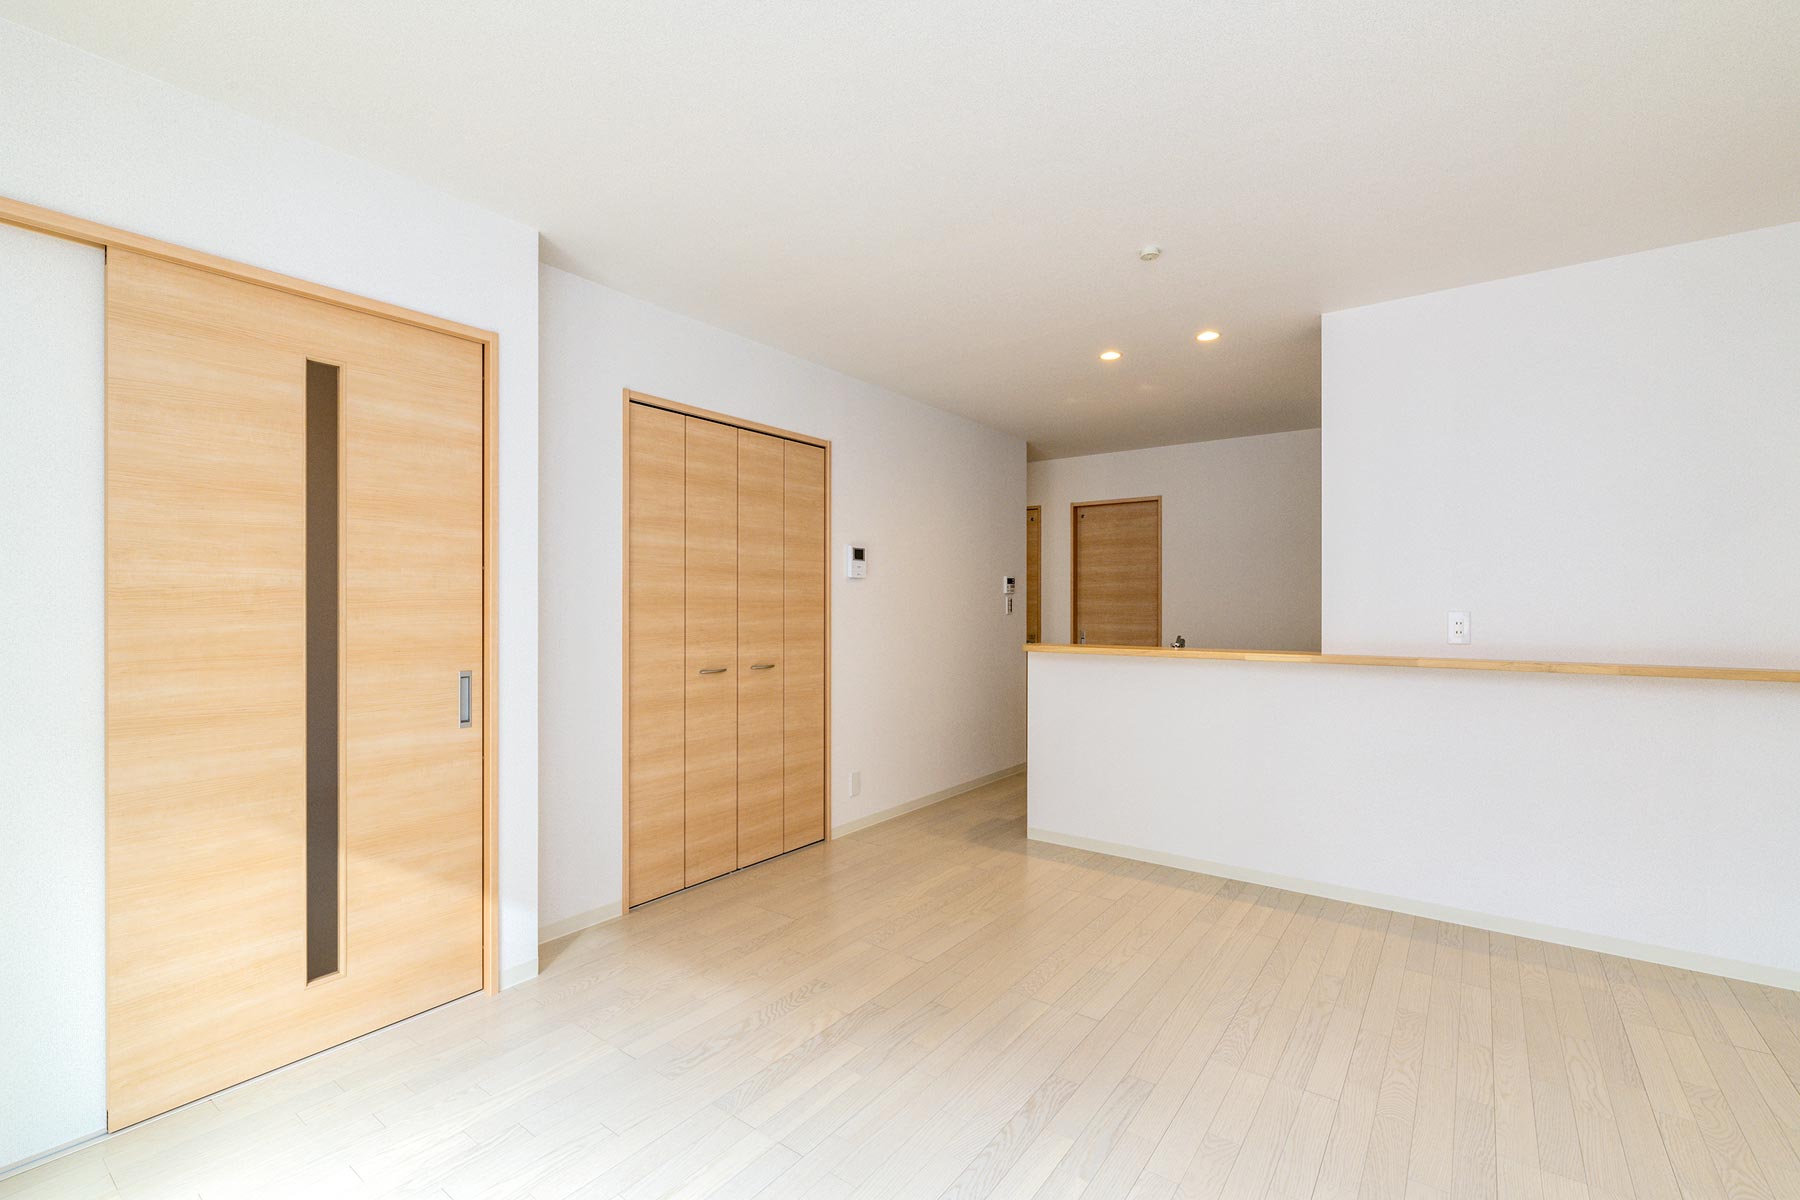 名古屋市北区の戸建賃貸住宅の建具が木目模様のナチュラルテイストなLDK